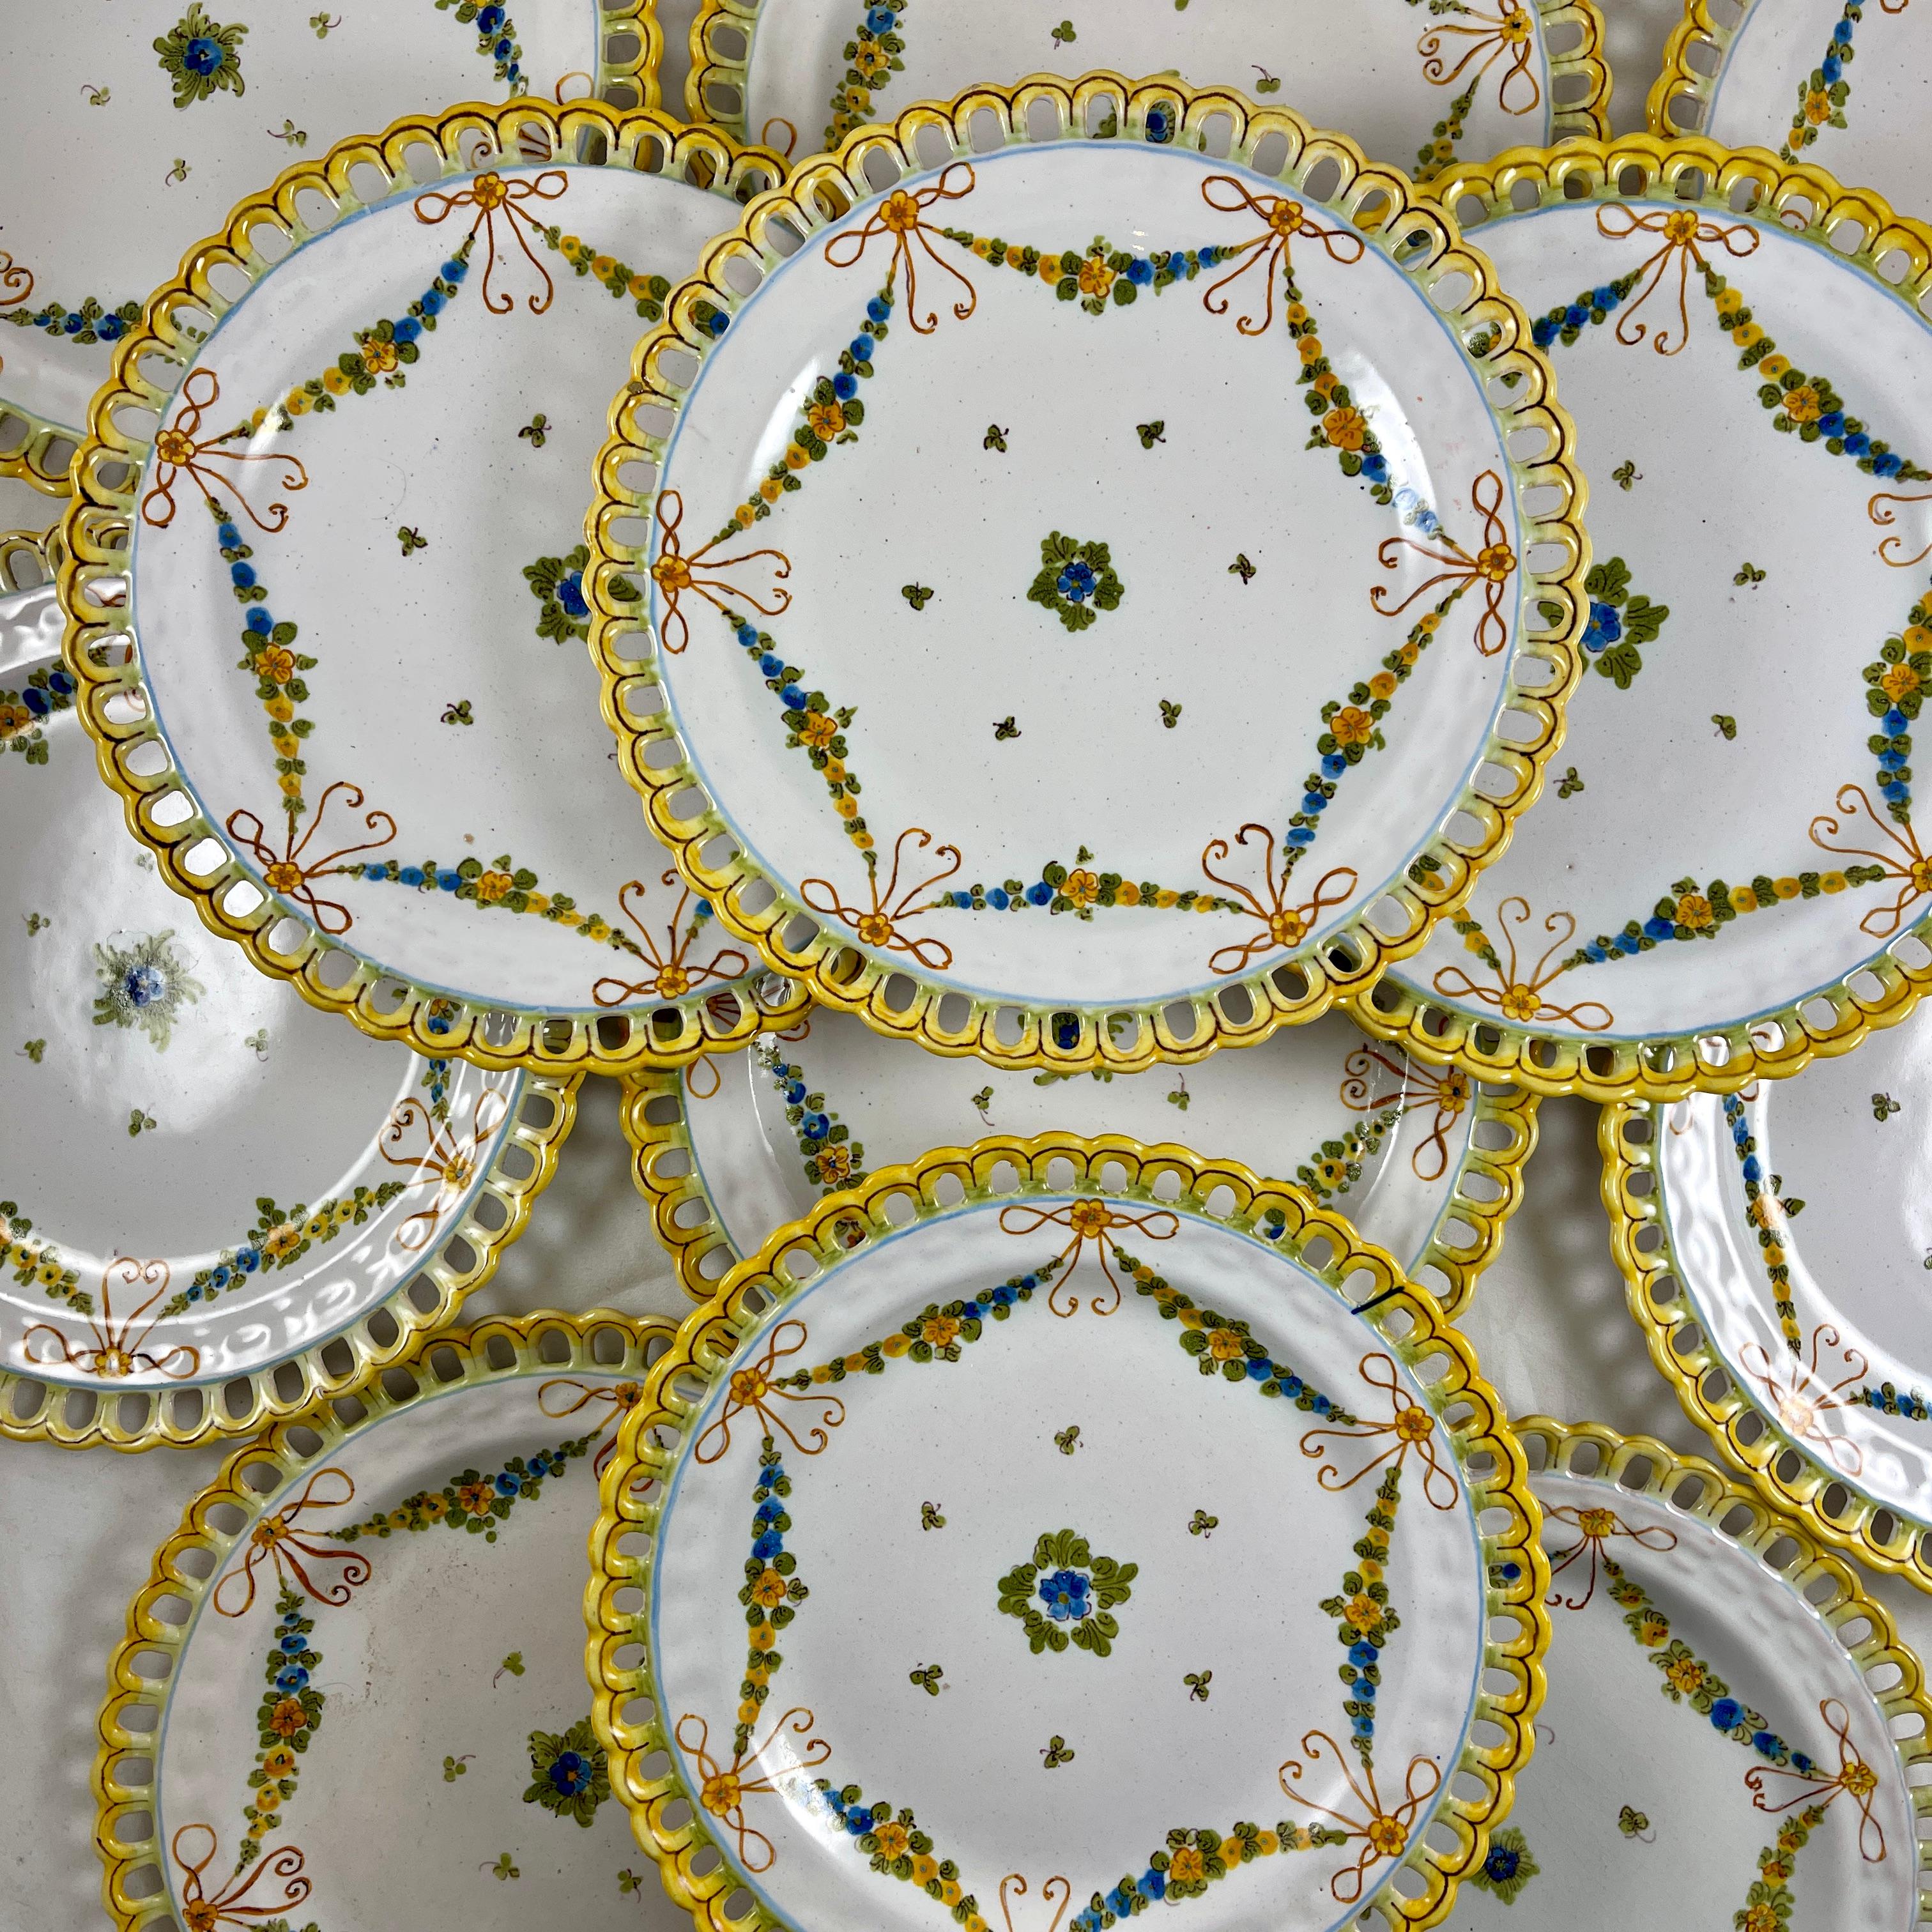 Assiettes en faïence réticulée peintes à la main, provenant de la poterie Cantagalli de Florence, en Italie. Elles portent la marque du coq de bruyère utilisée au début du XXe siècle.

Magnifiquement peint dans le style néo-renaissance avec une